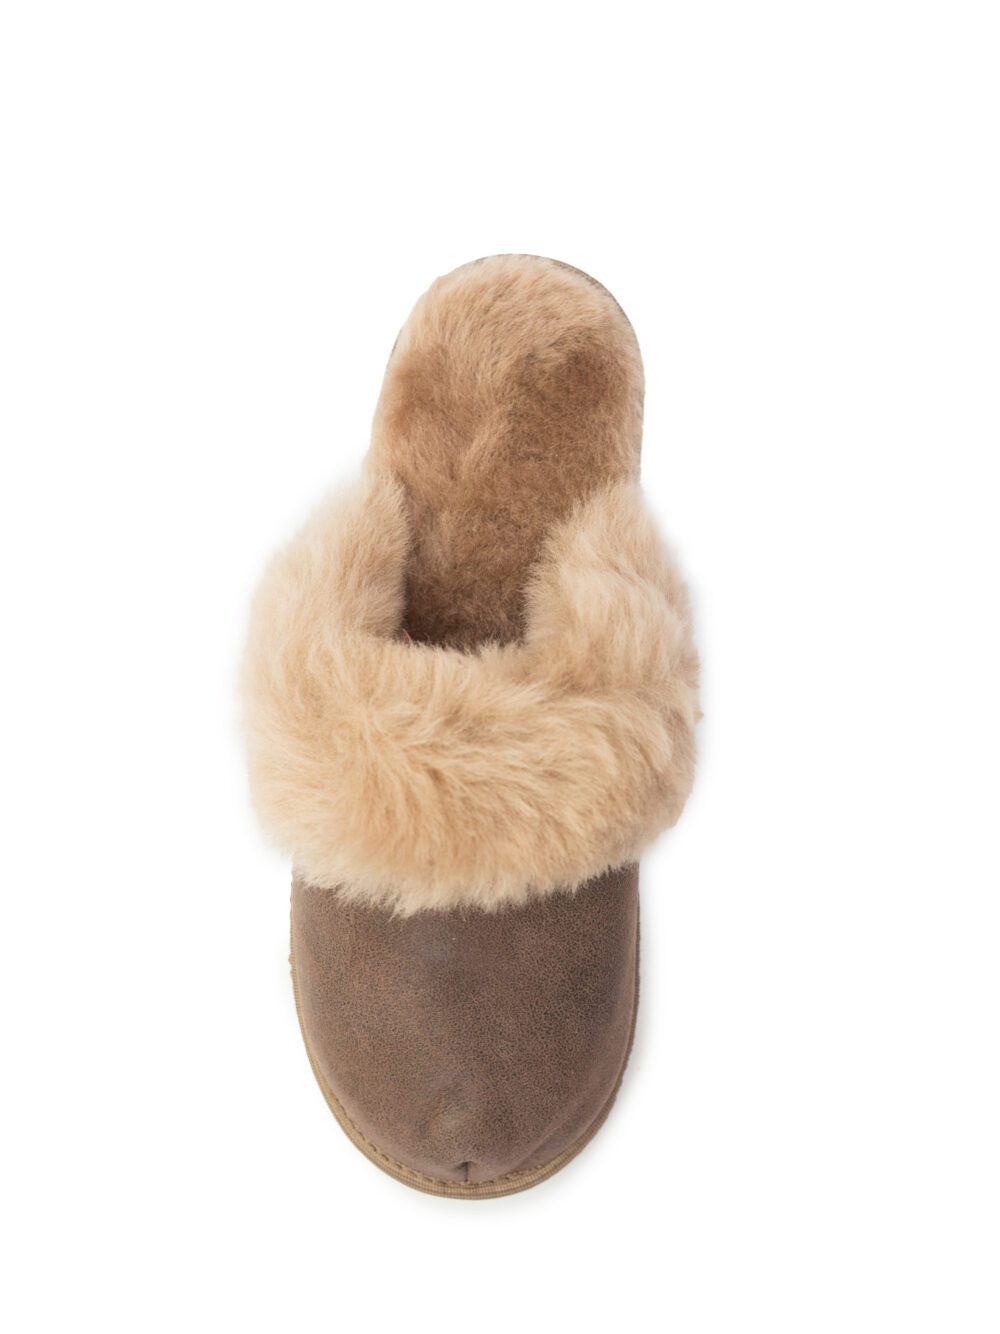 Women’s Slippers Lana Classic Accessories Producent owczych skór dekoracyjnych | Tannery Sheepskin | KalSkór 5